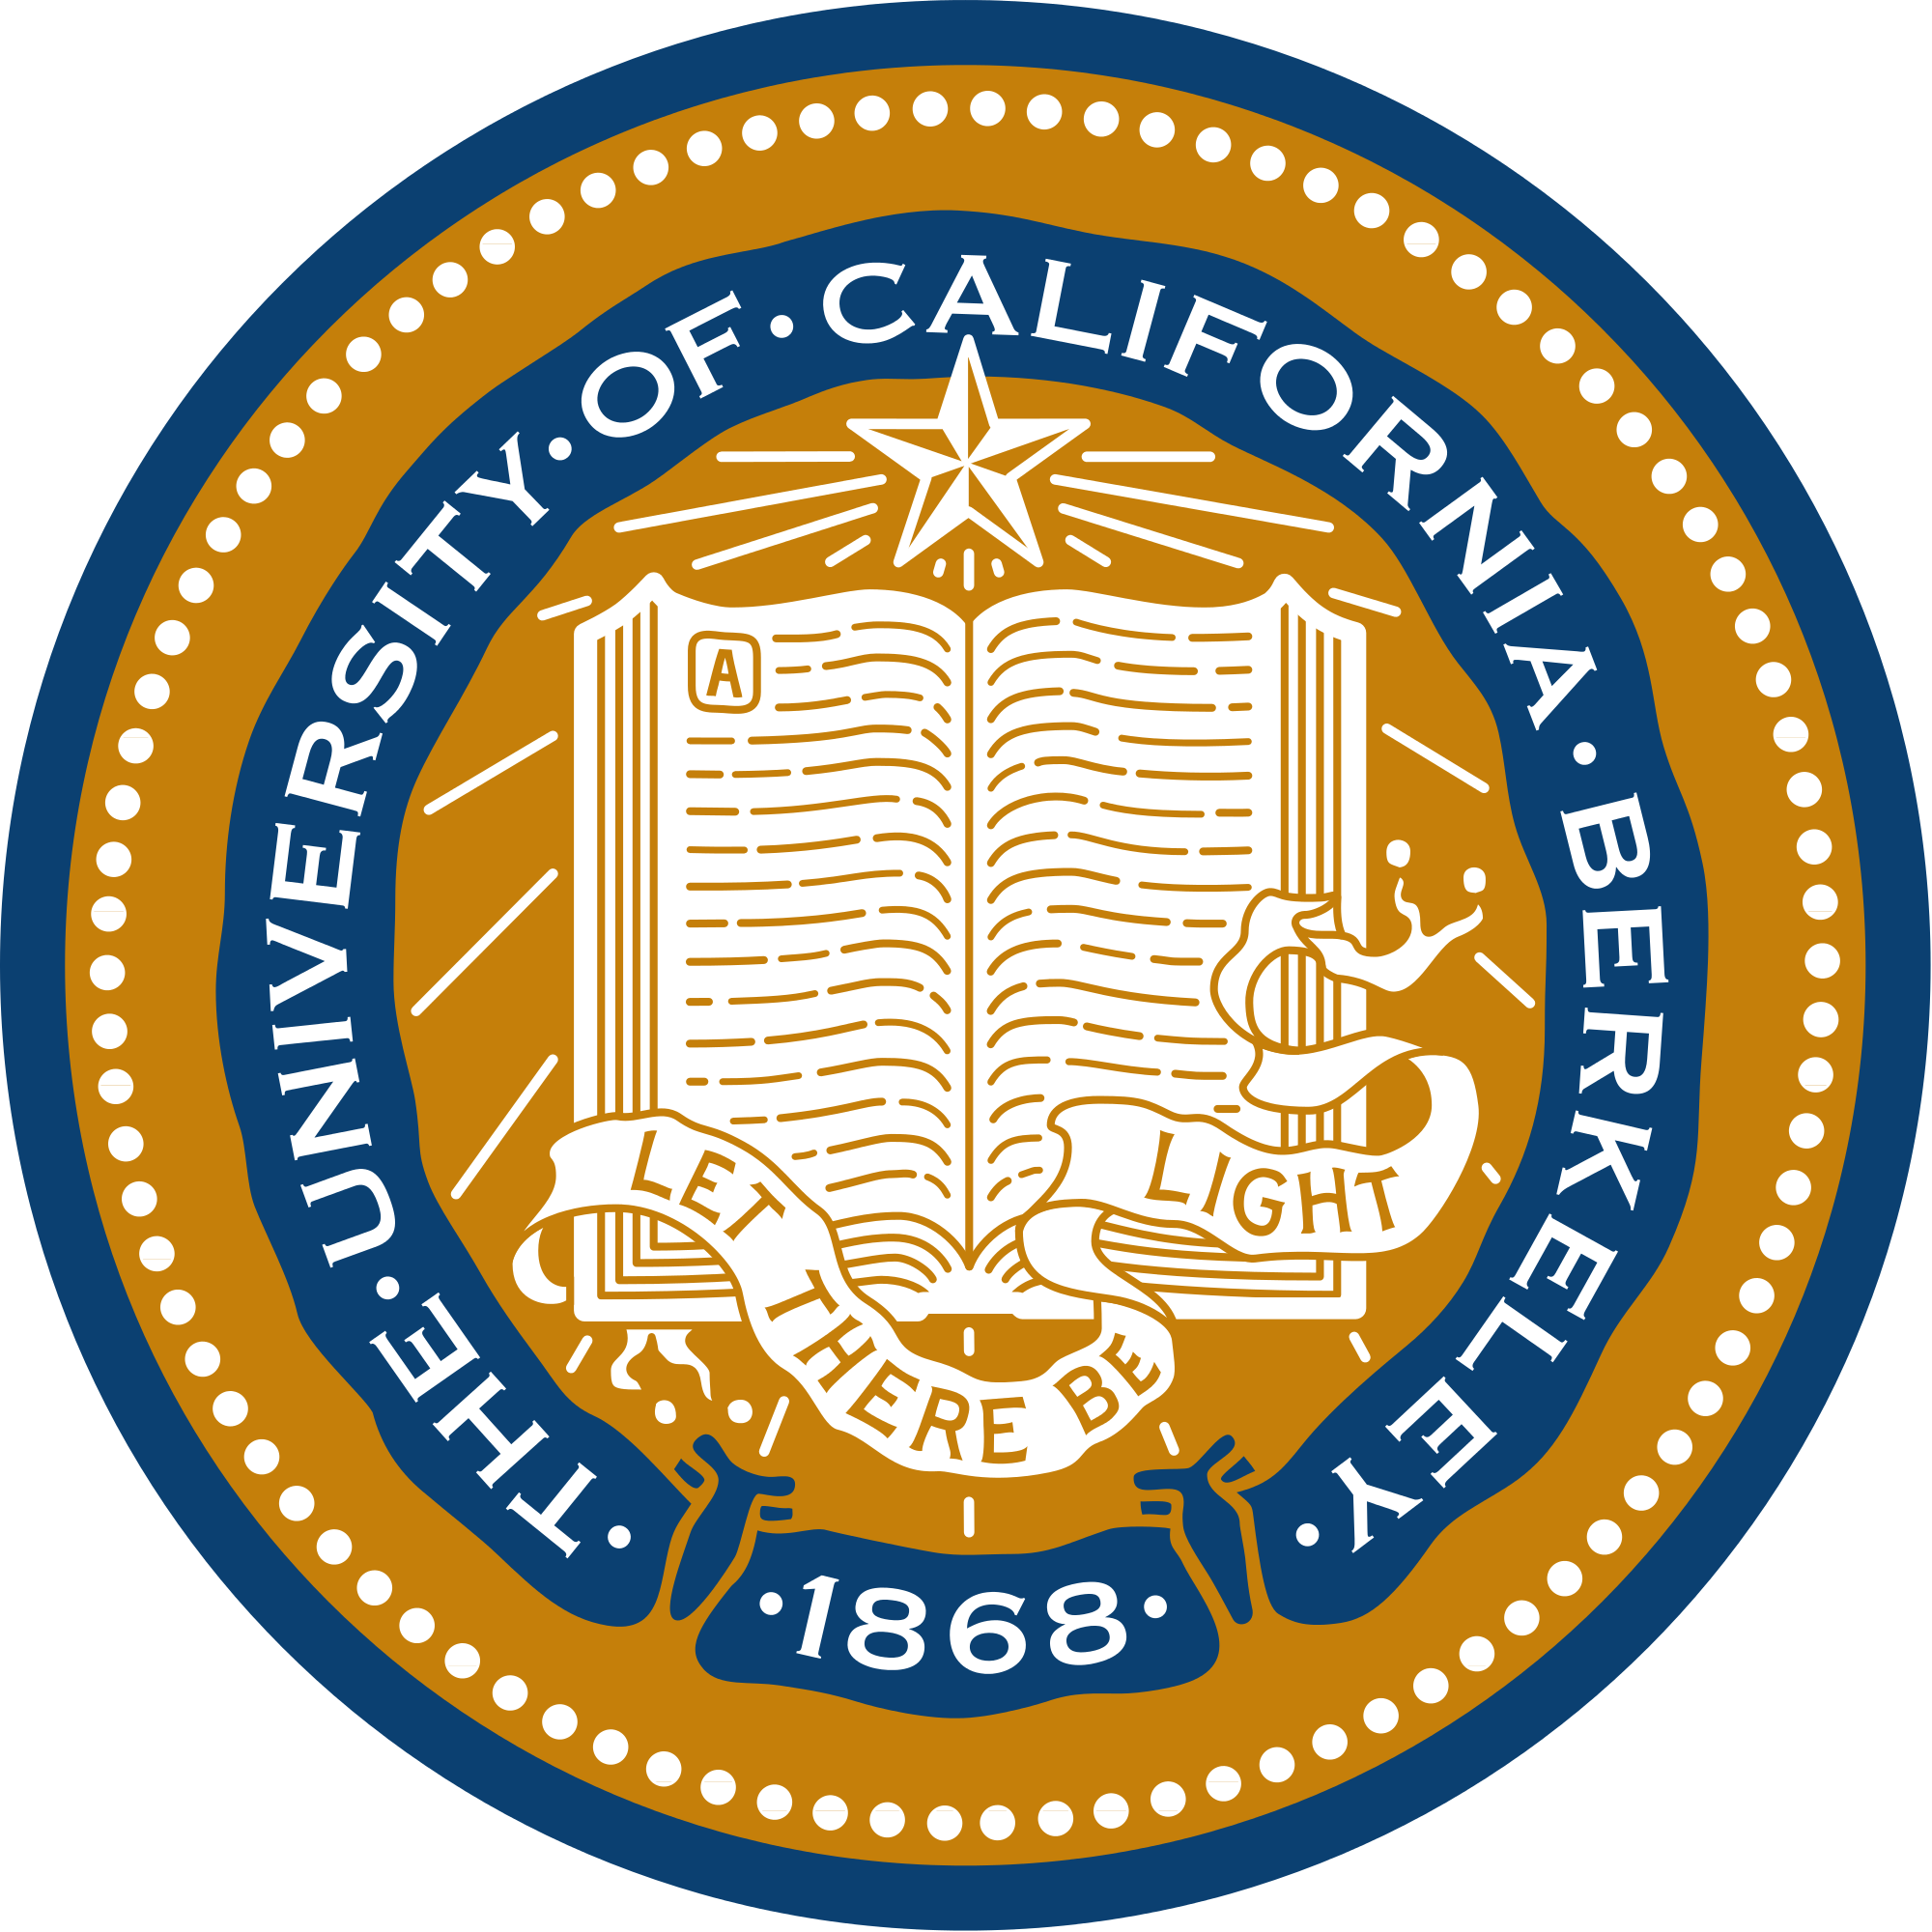 加州大学洛杉矶分校 _University of California, Los Angeles (UCLA)_院校介绍_启德留学选校